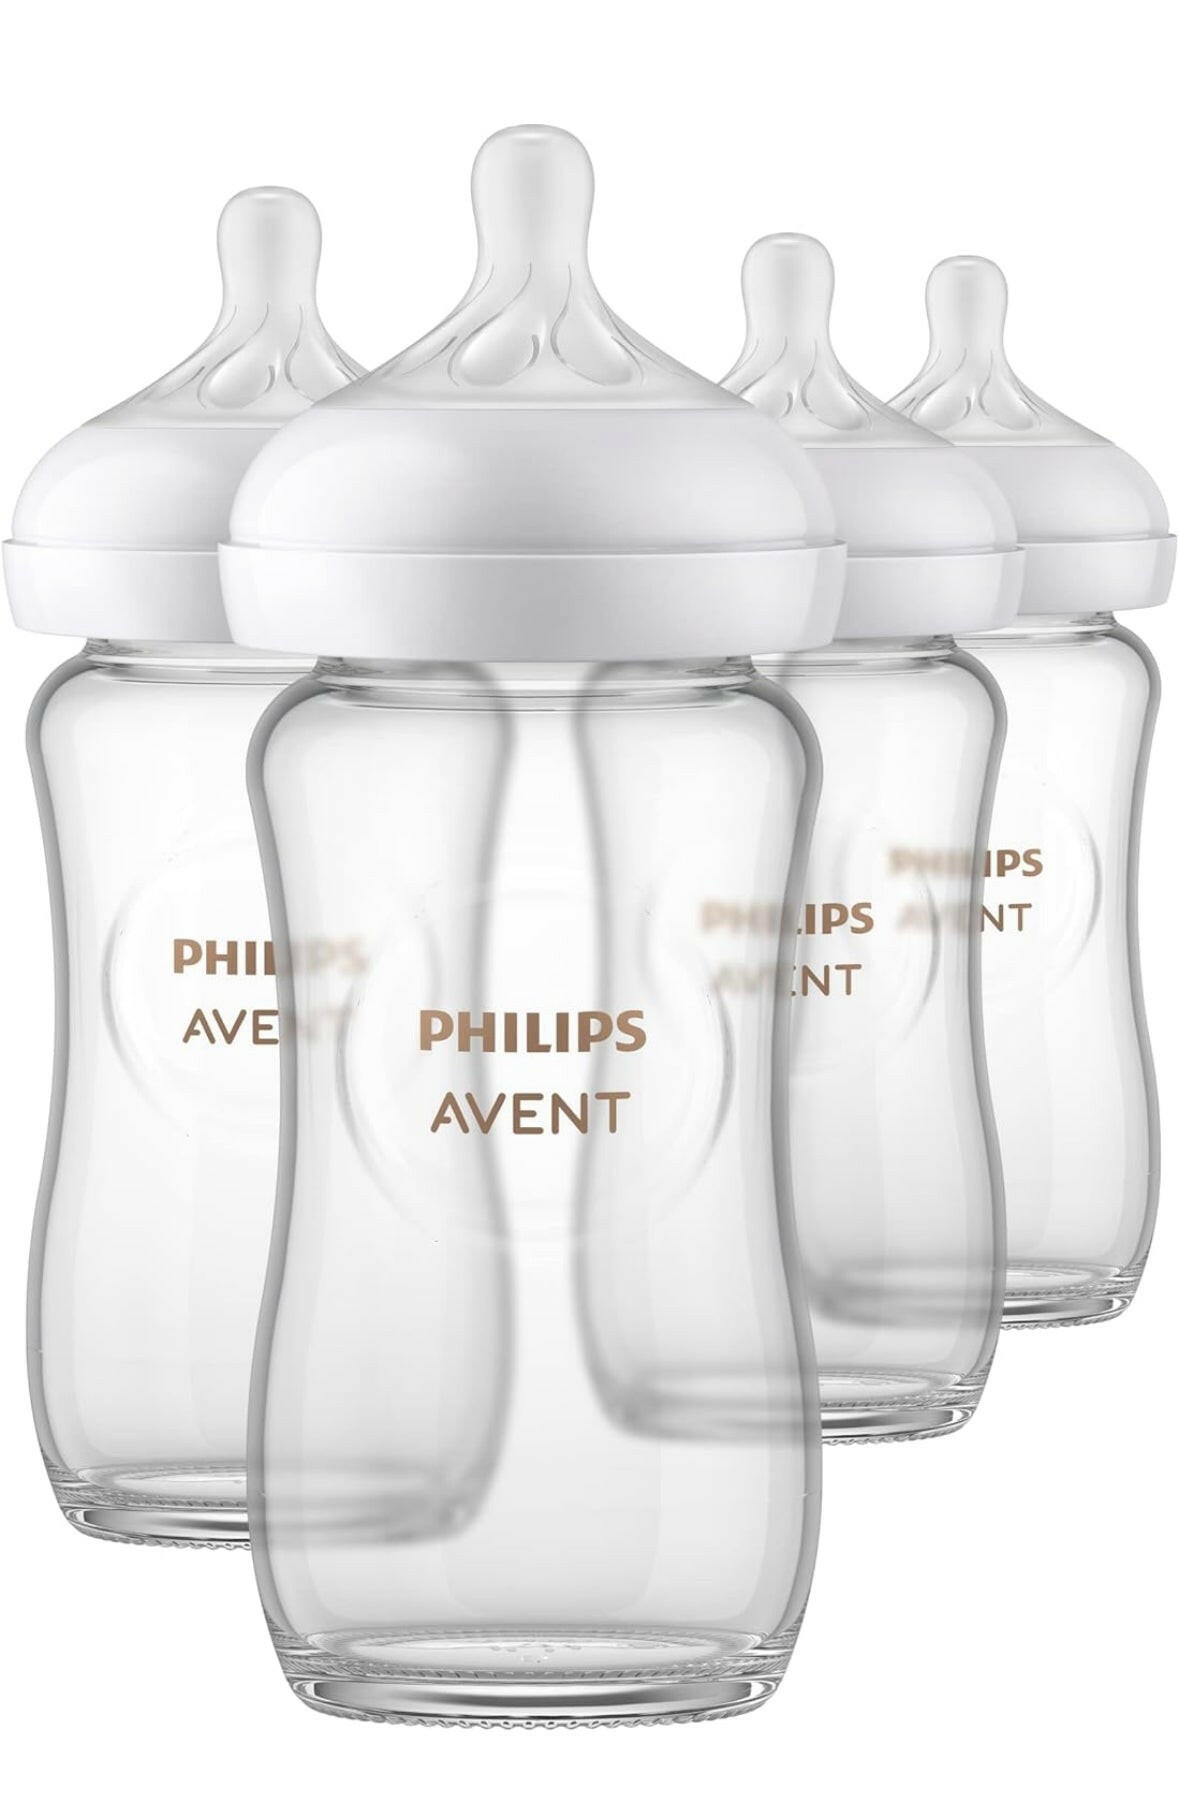 زجاجة أطفال زجاجية طبيعية من فيليبس أفينت مع حلمة استجابة طبيعية، شفافة، 8 أونصة، 4 قطع